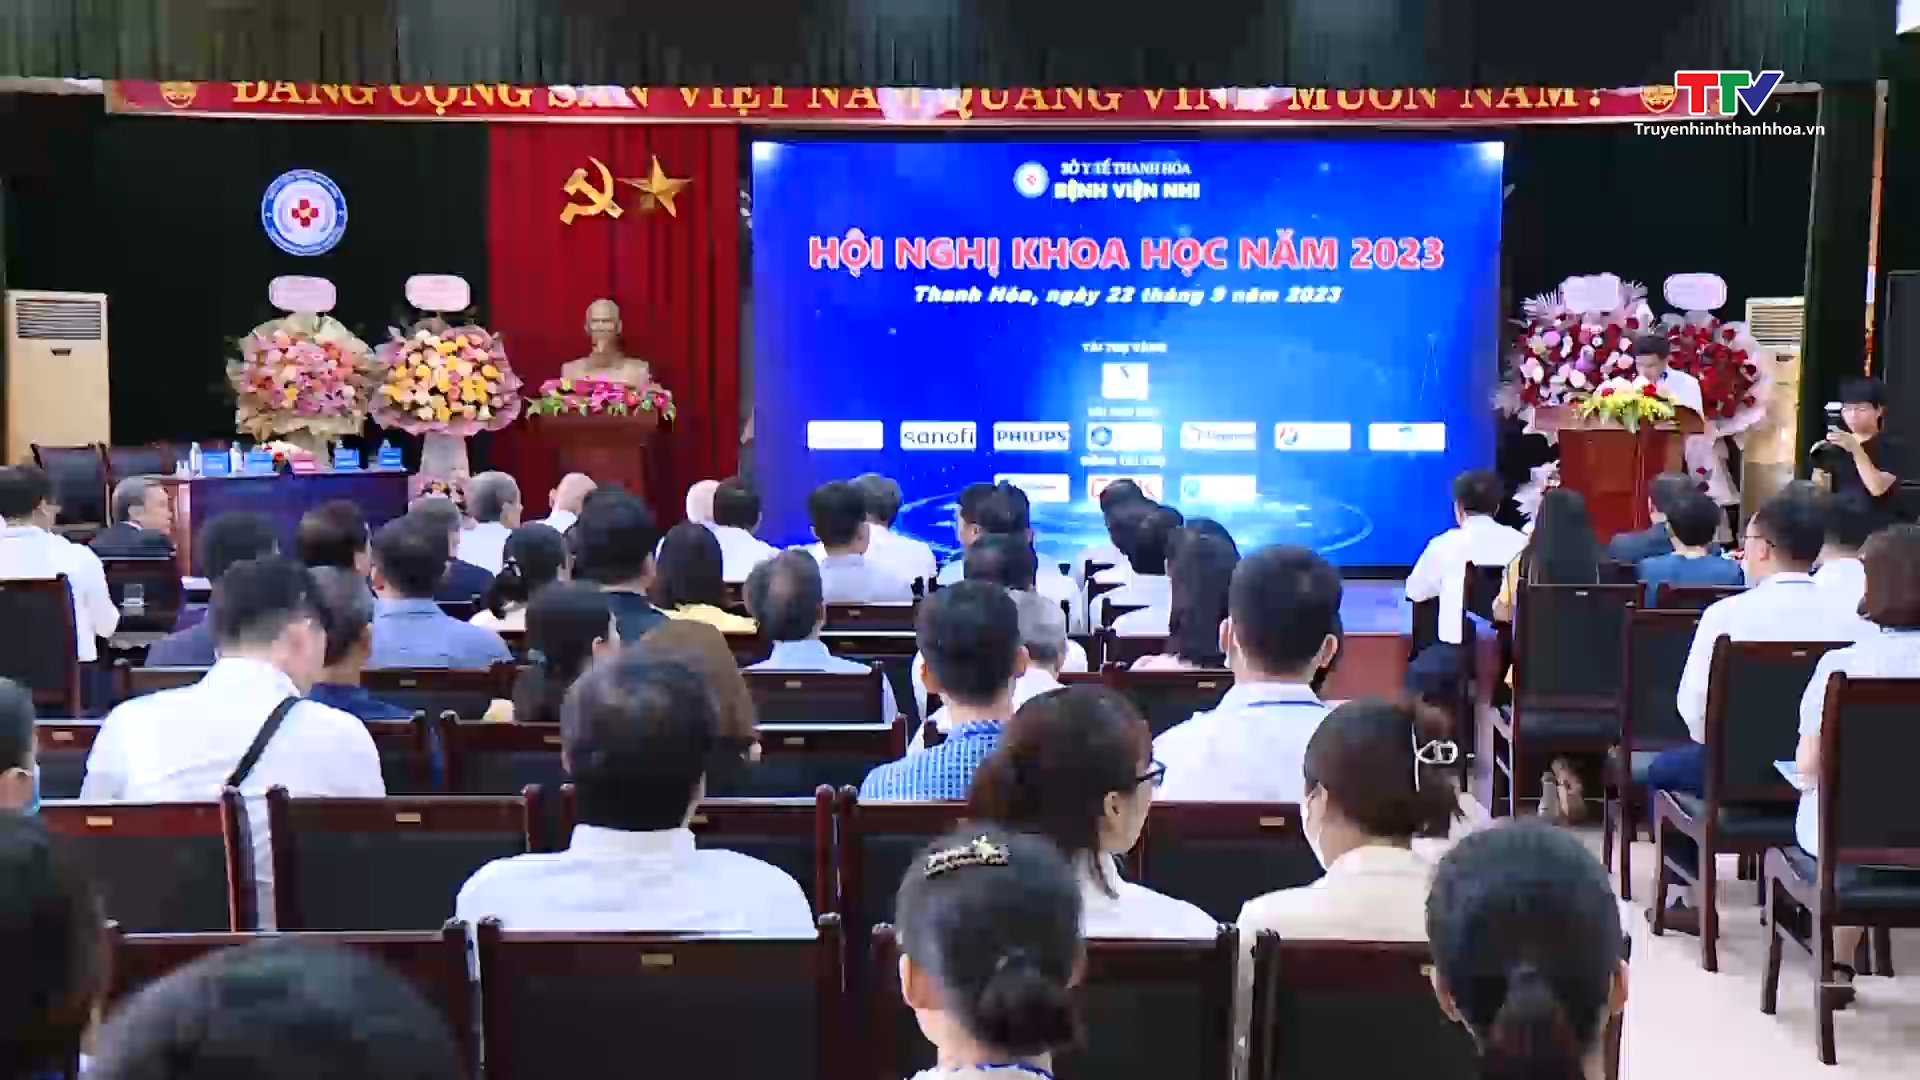 Hội nghị khoa học Bệnh viện Nhi Thanh Hóa năm 2023 - Ảnh 2.